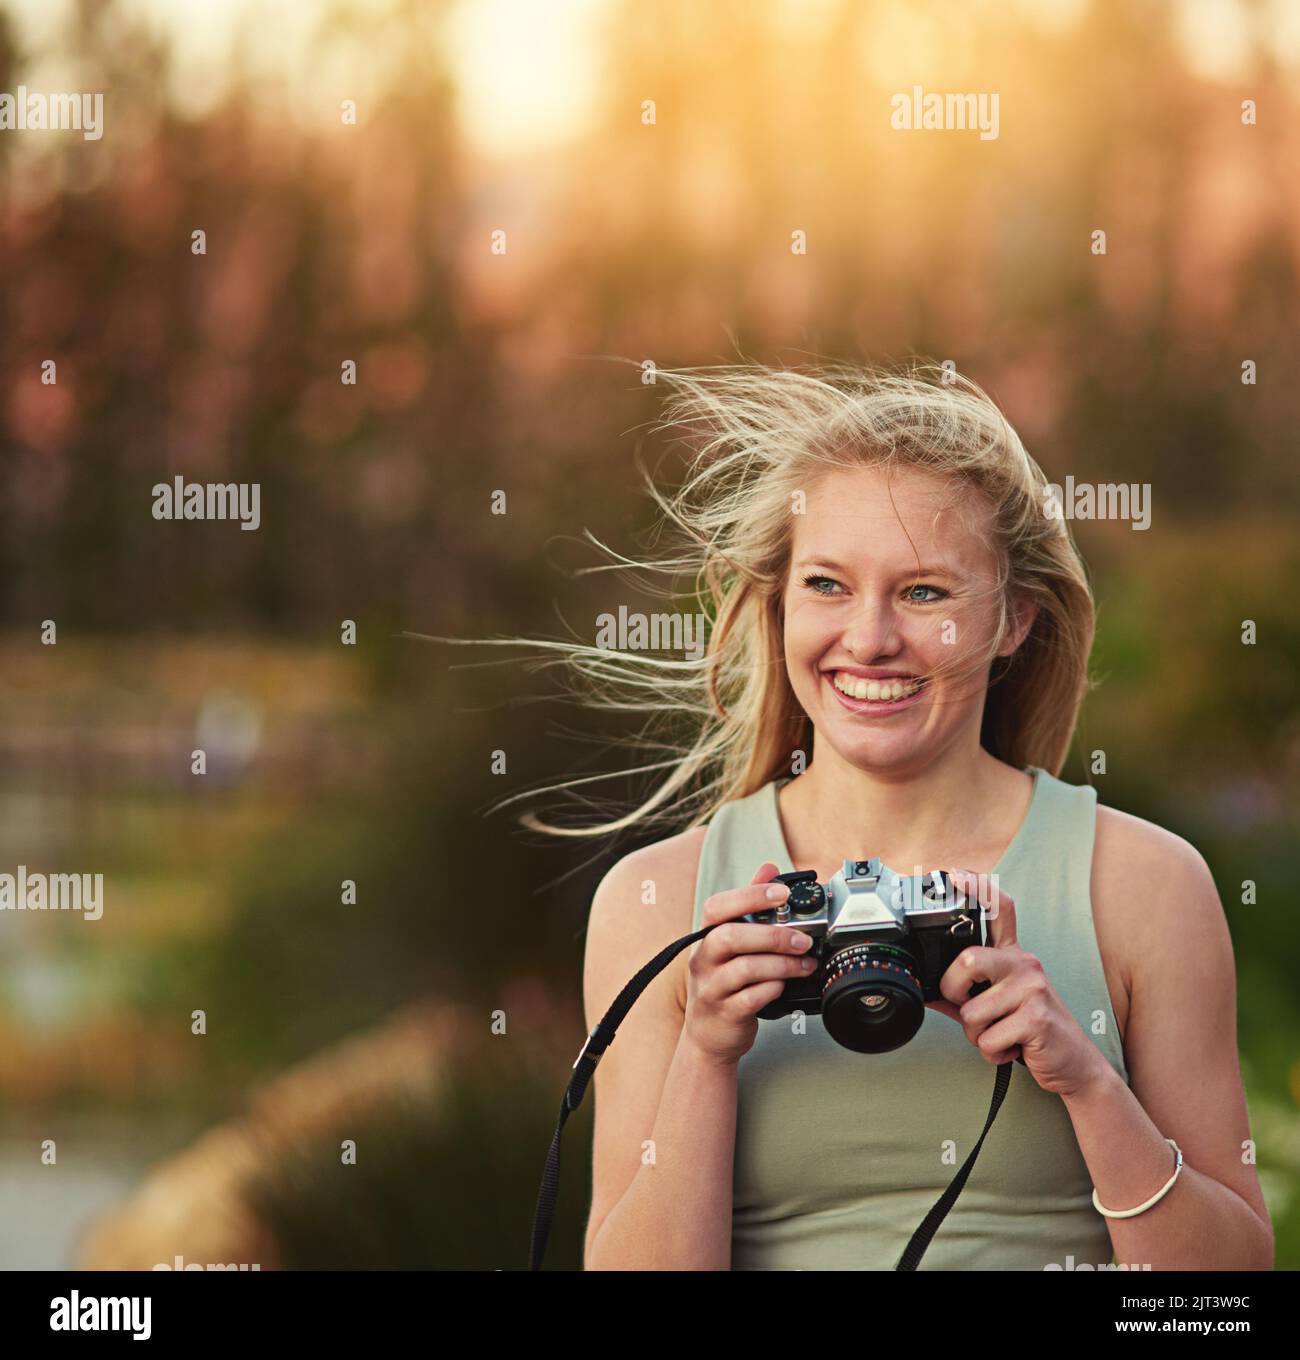 Une jeune femme prend des photos sur son appareil photo à l'extérieur. Banque D'Images